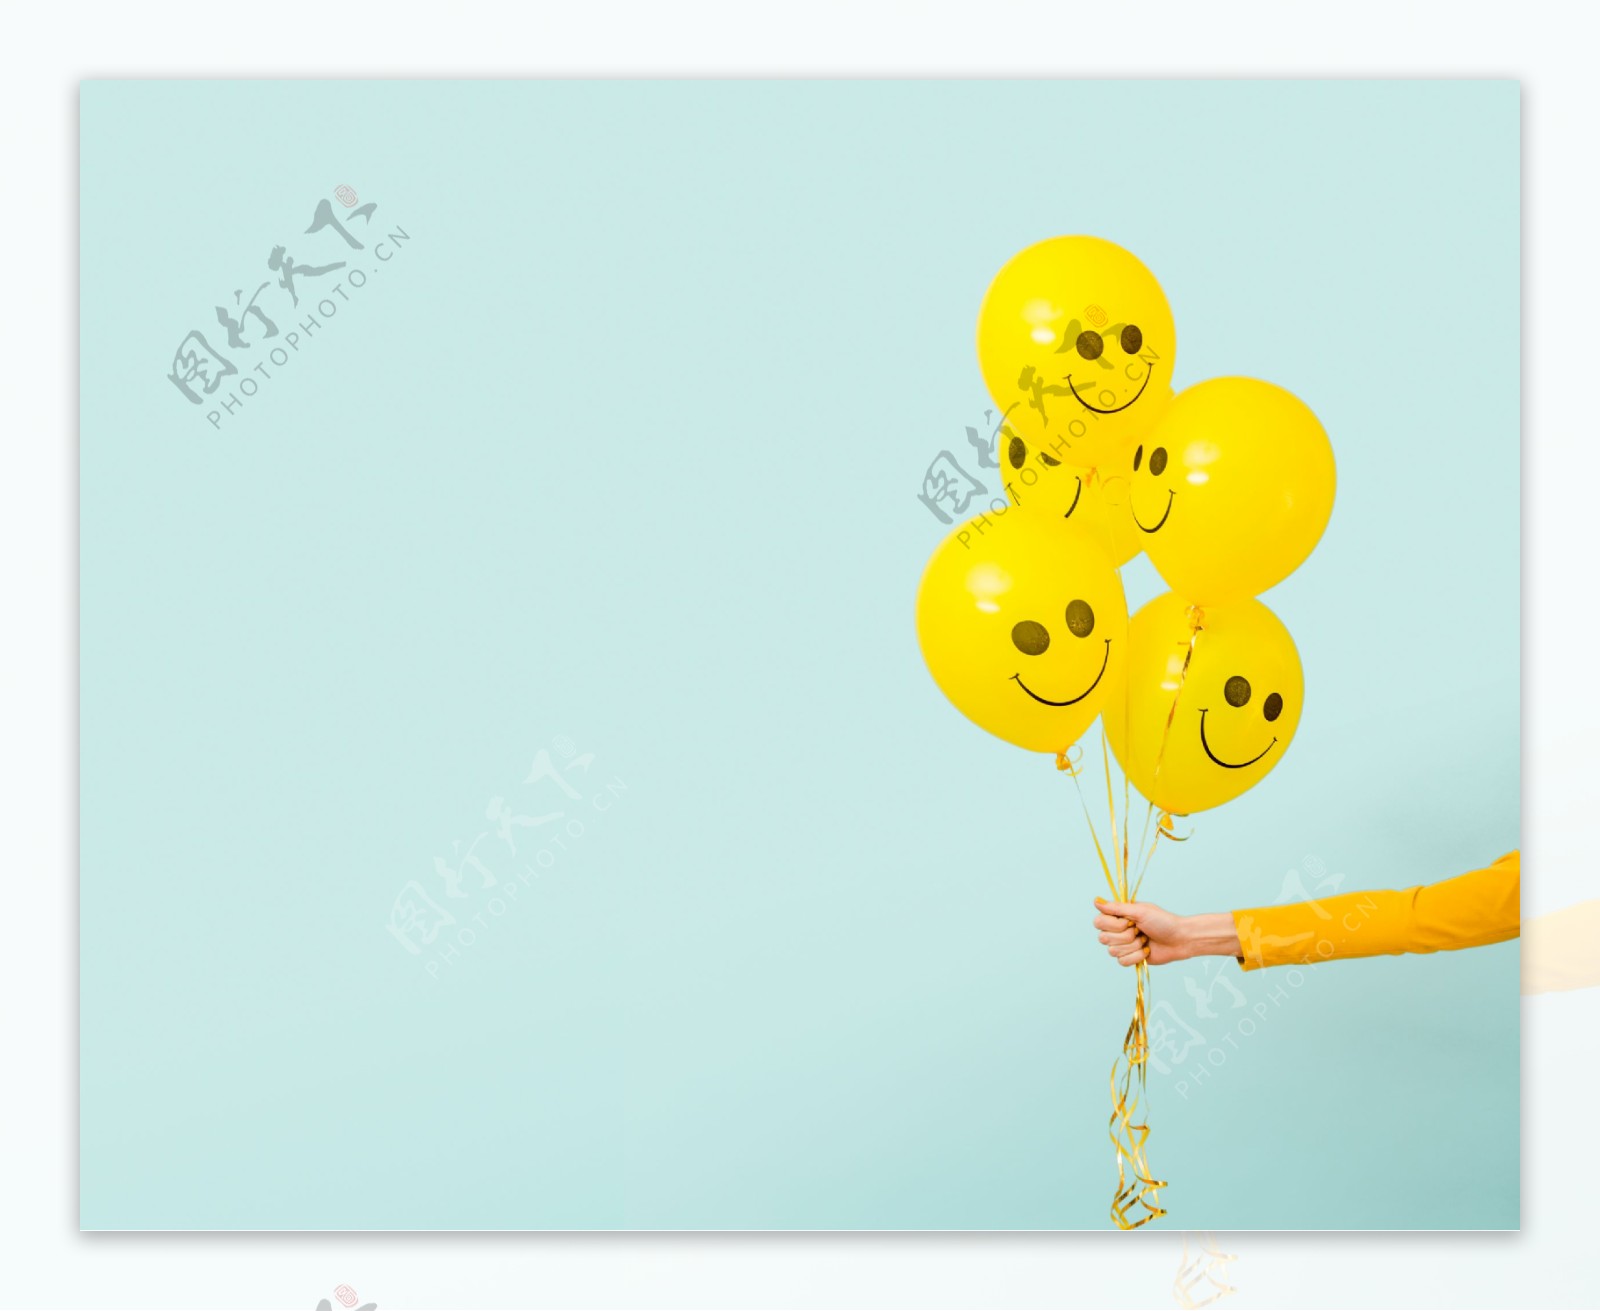 黄色笑脸气球